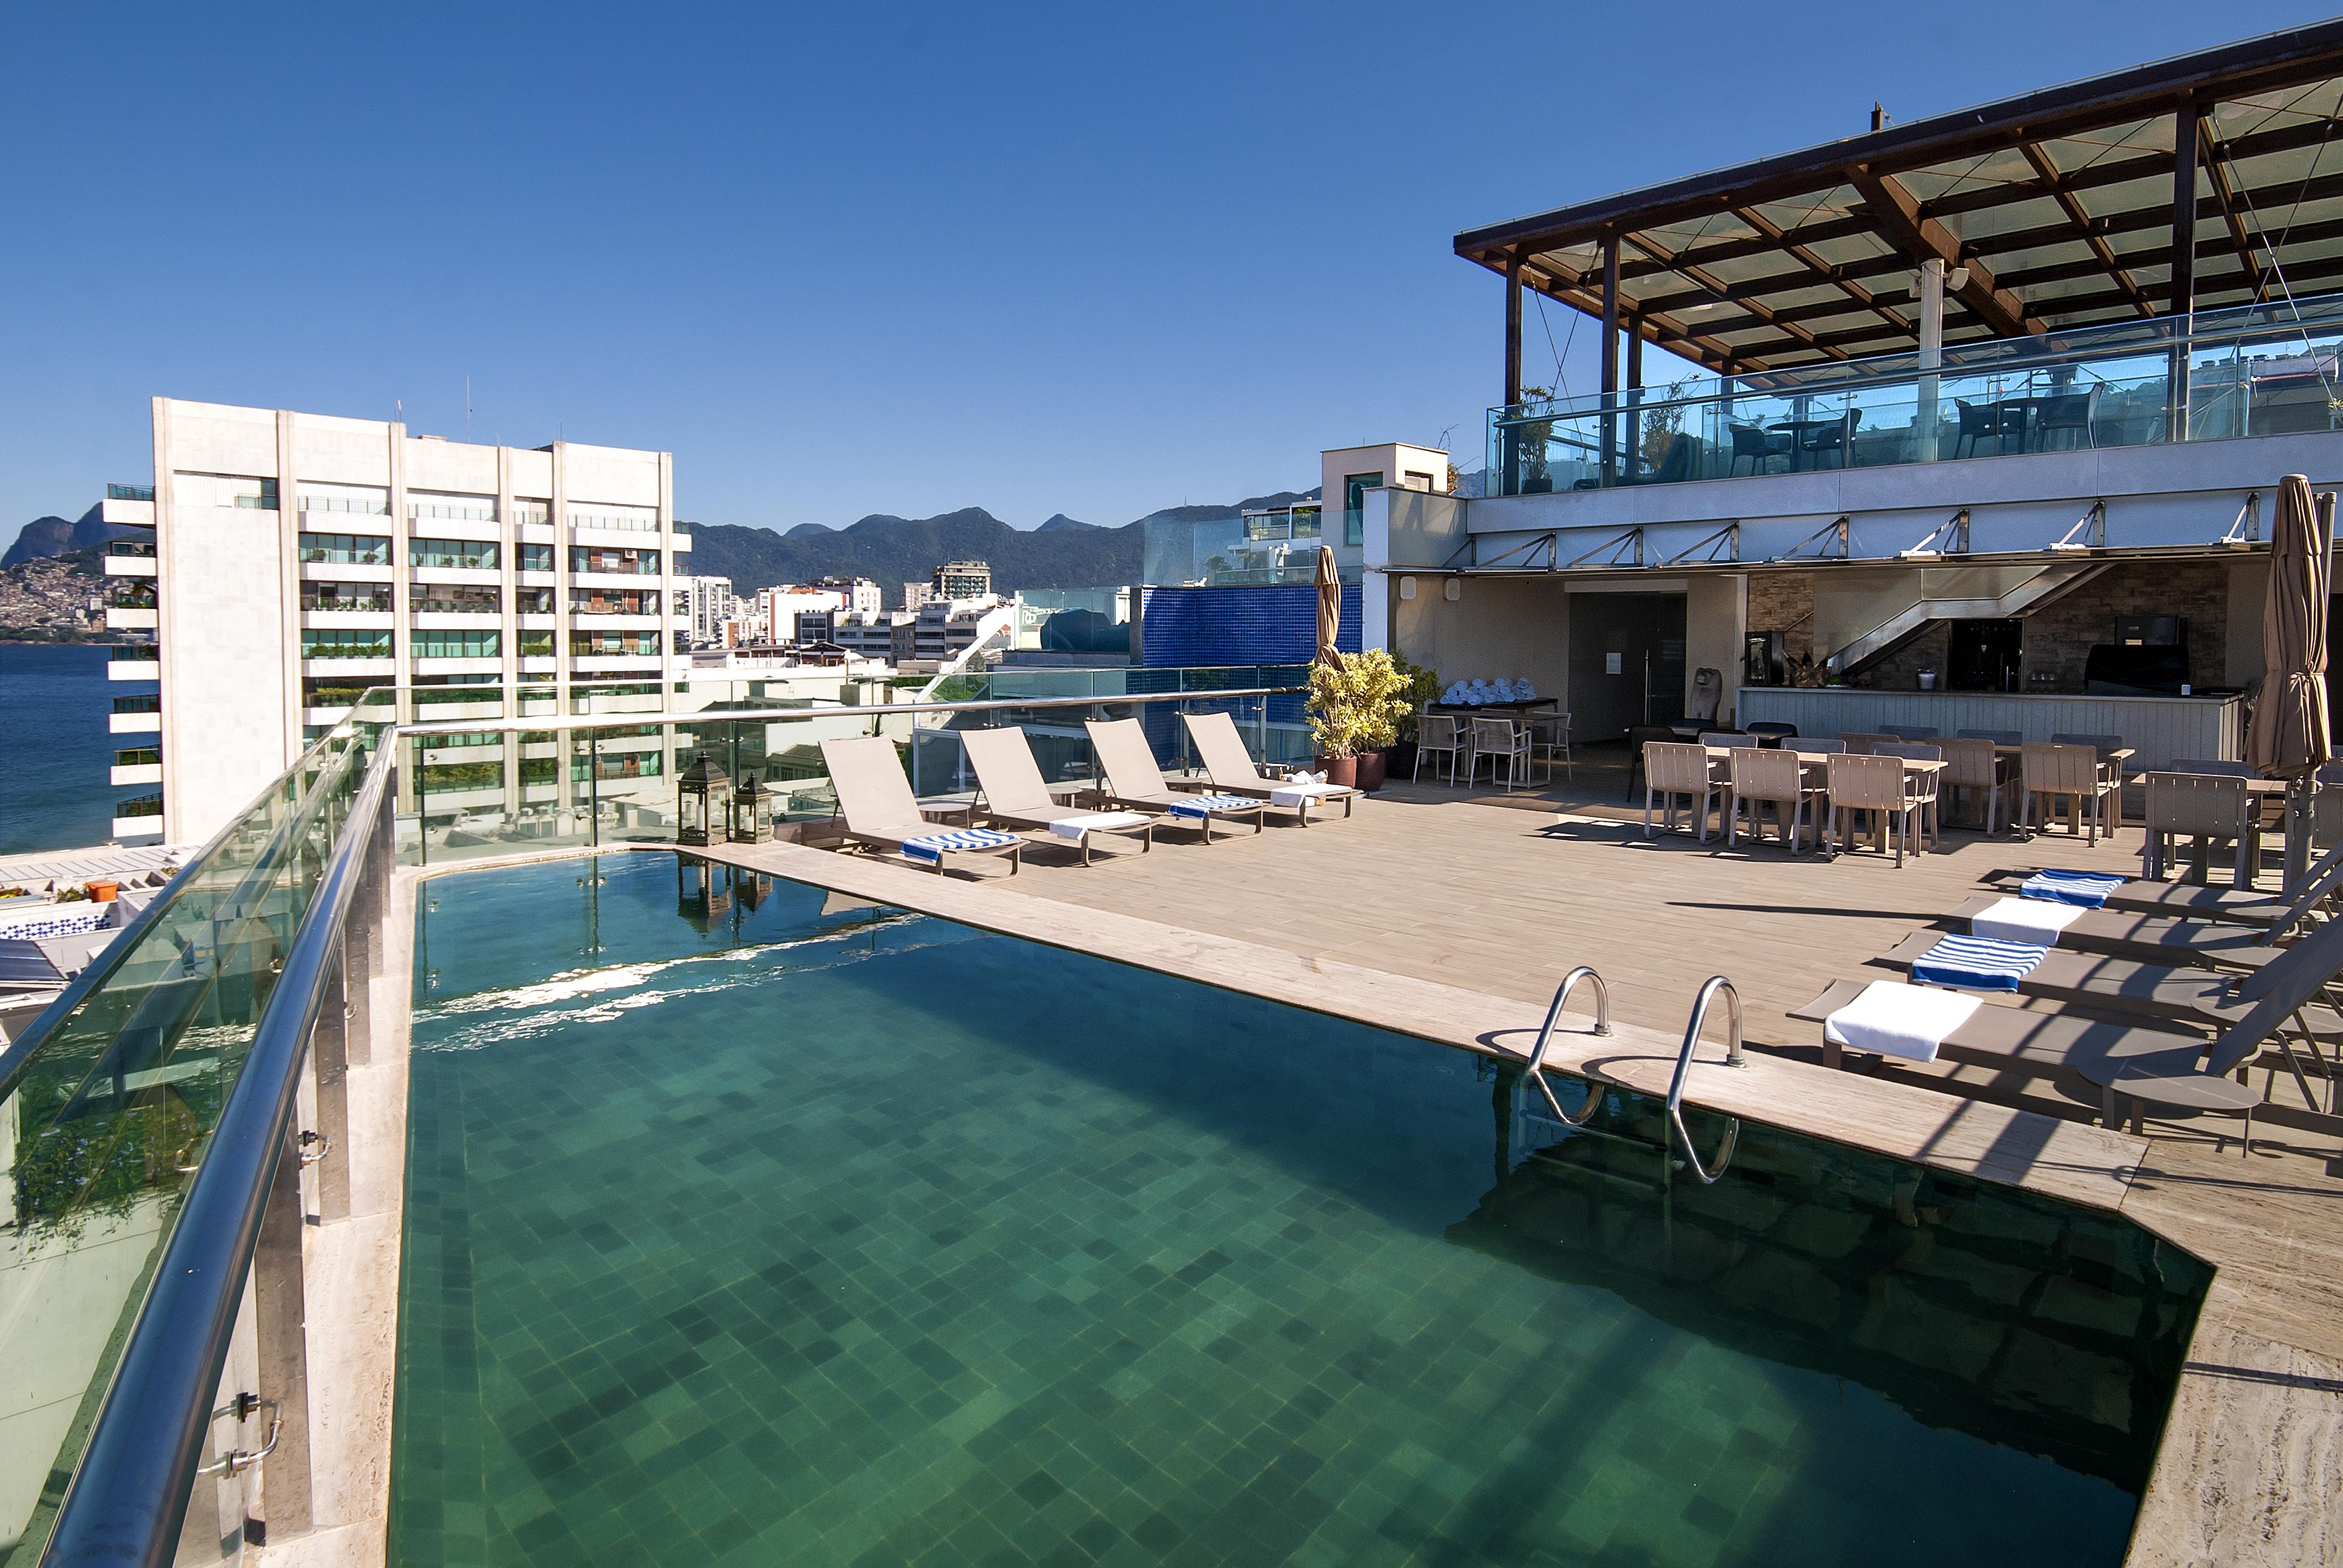 Arena Ipanema Hotel Рио-де-Жанейро Экстерьер фото